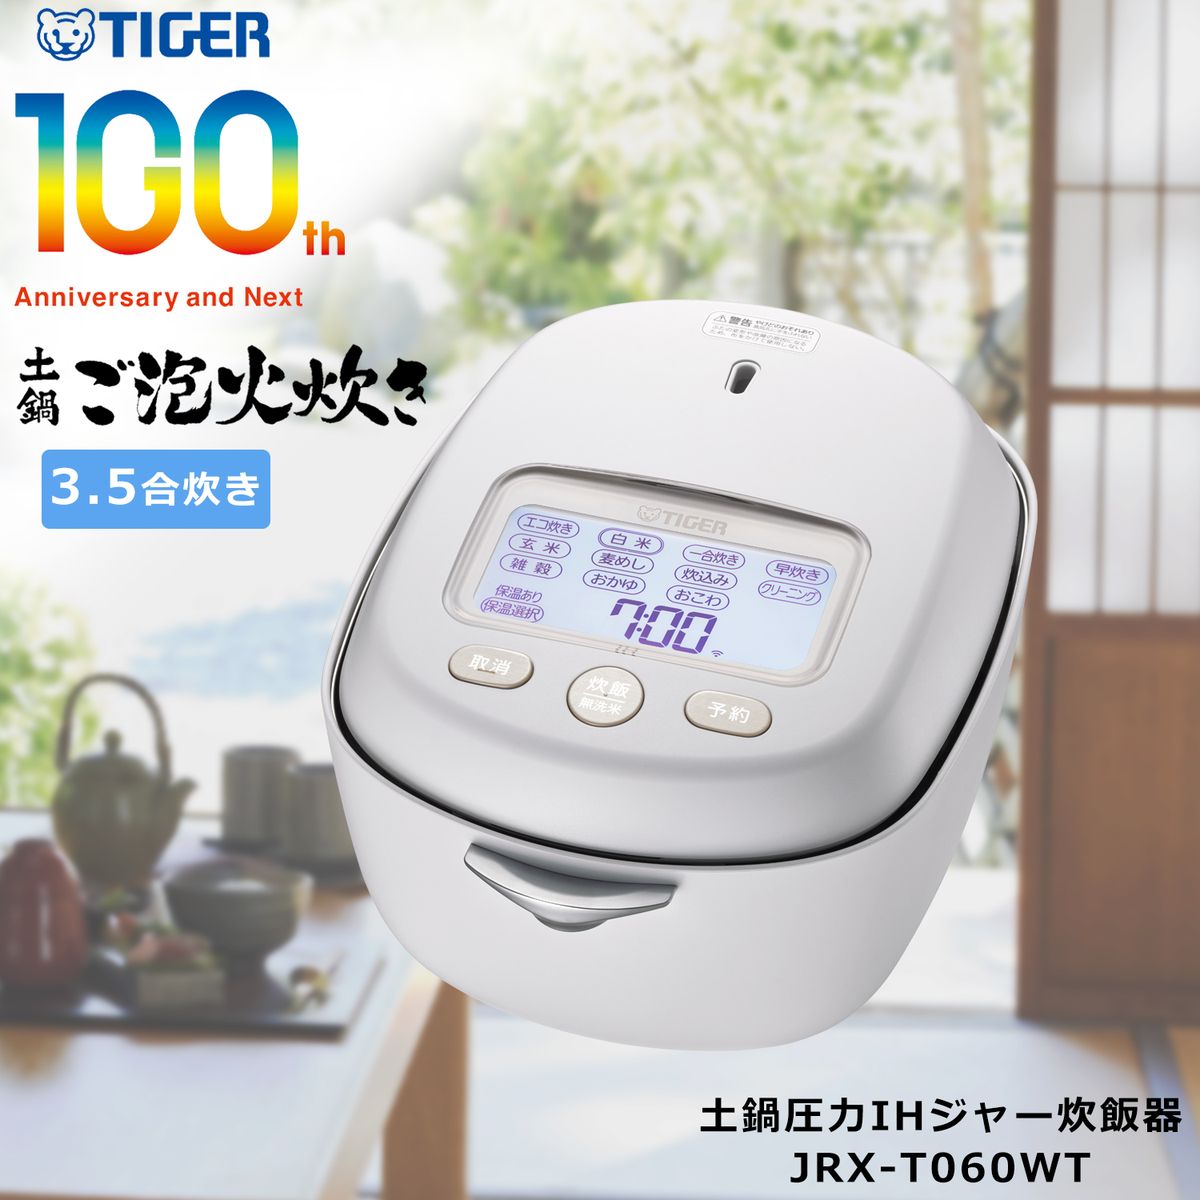 炊飯器 3.5合 タイガー Tiger 圧力 IH 日本製 土鍋 炊きたて 土鍋5年保証 お手入れ 簡単 白 ホワイト 100周年 炊き分け スマホ IoT DX